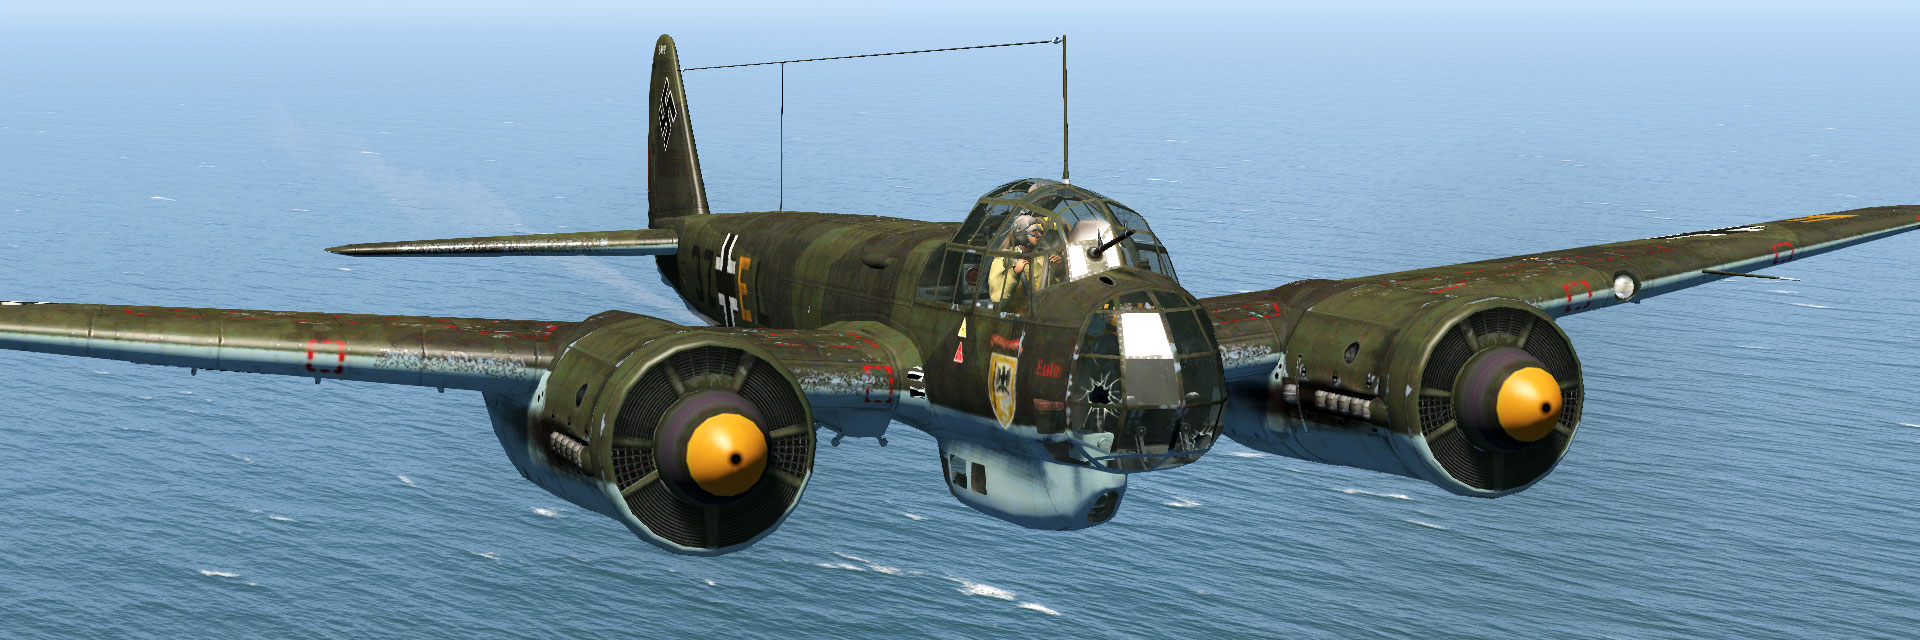 6 88 c. Ju 88 c-6. Ju-88c f1-XM. Ju 88 a-1. Ju-88 c6 f1+XM.